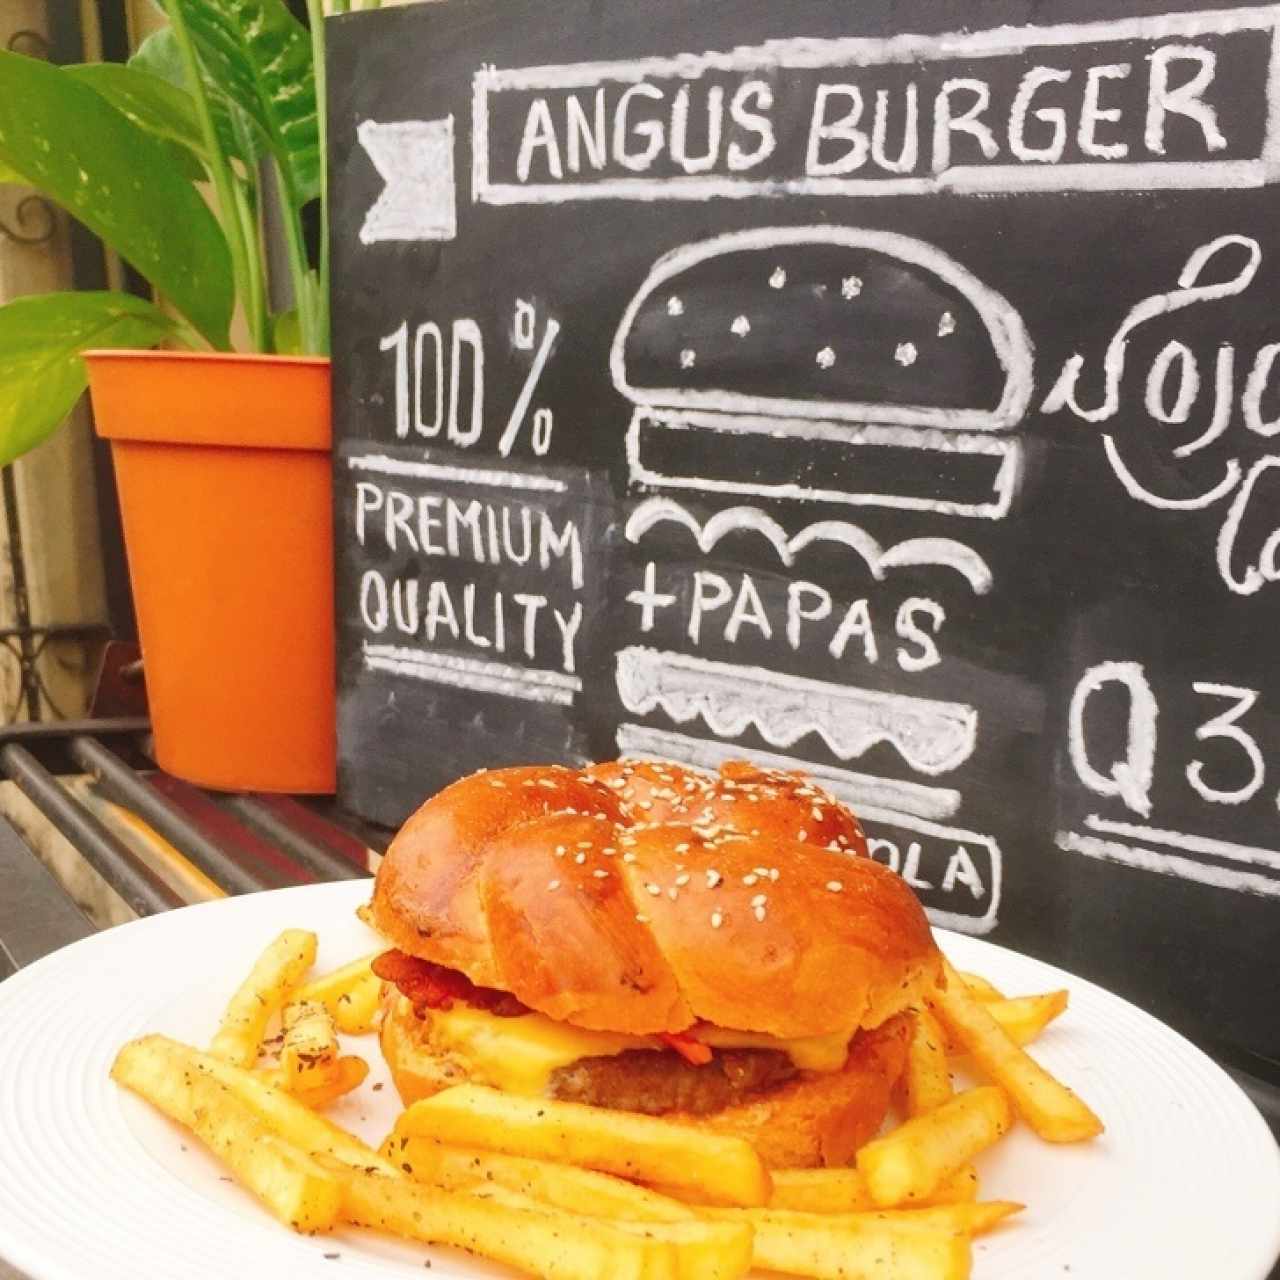 Angus burger